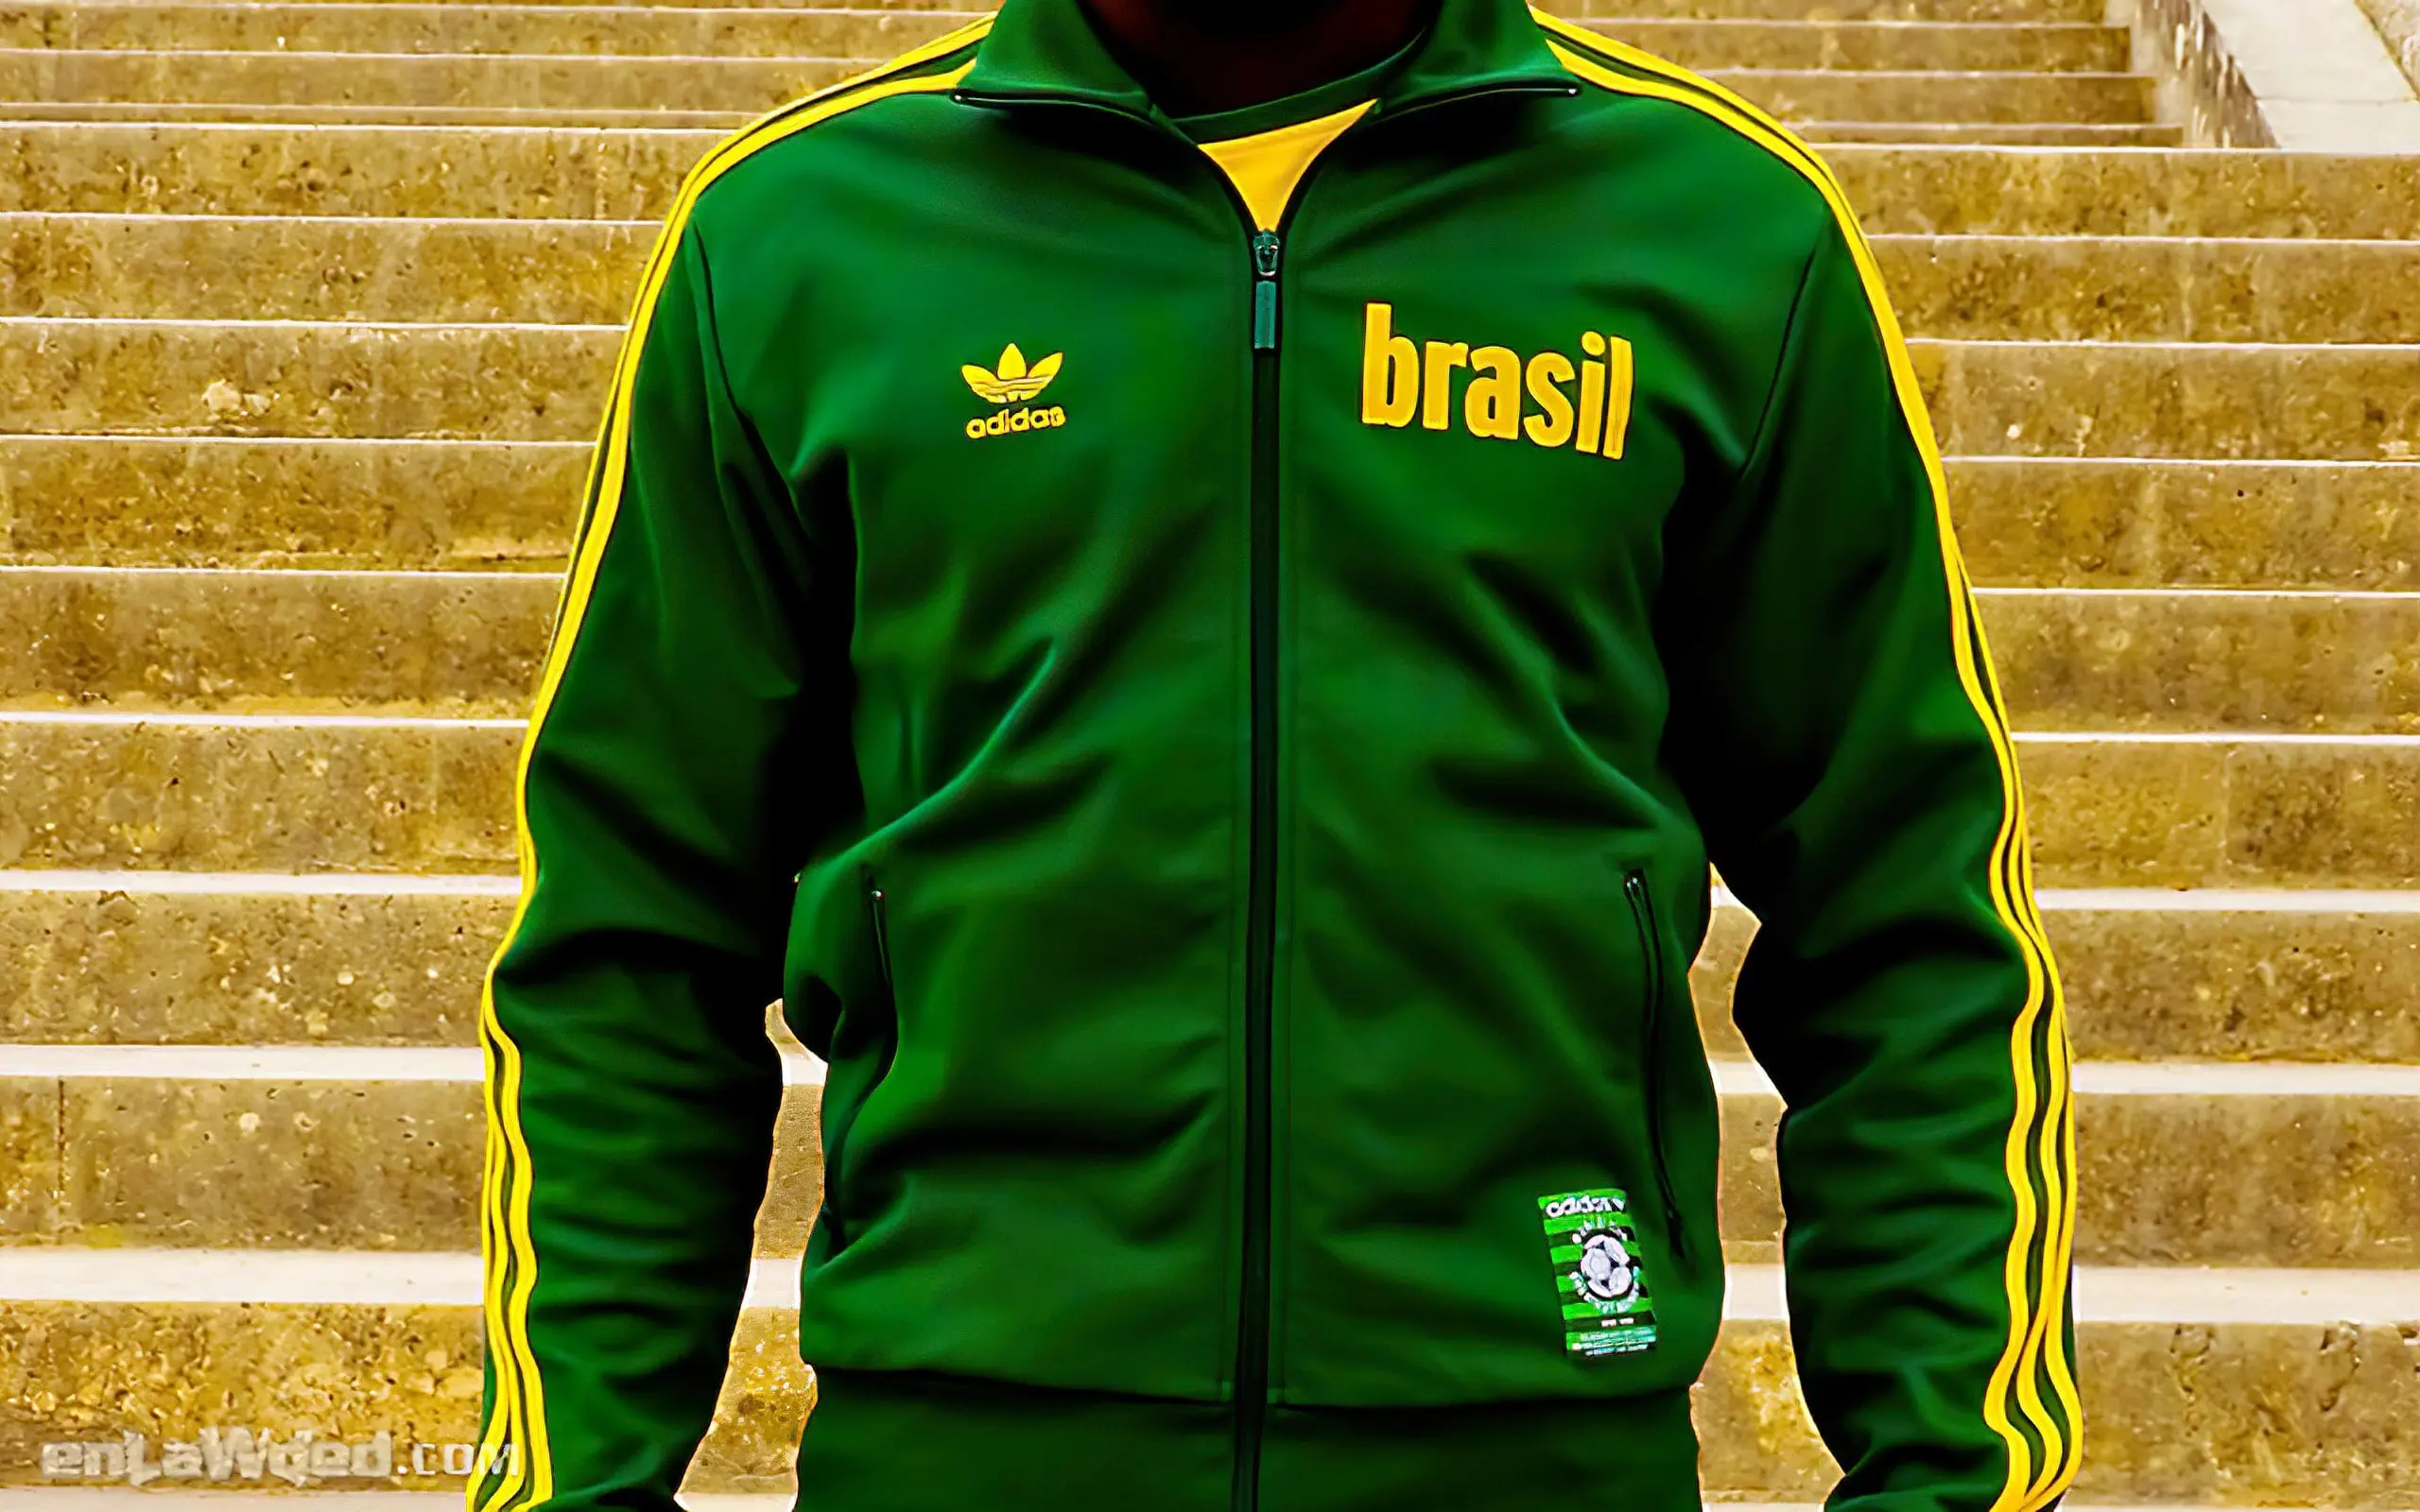 Men’s 2006 Brasil ’70 Track Top by Adidas Originals: Remarkable (EnLawded.com file #lmchk90247ip2y121988kg9st)